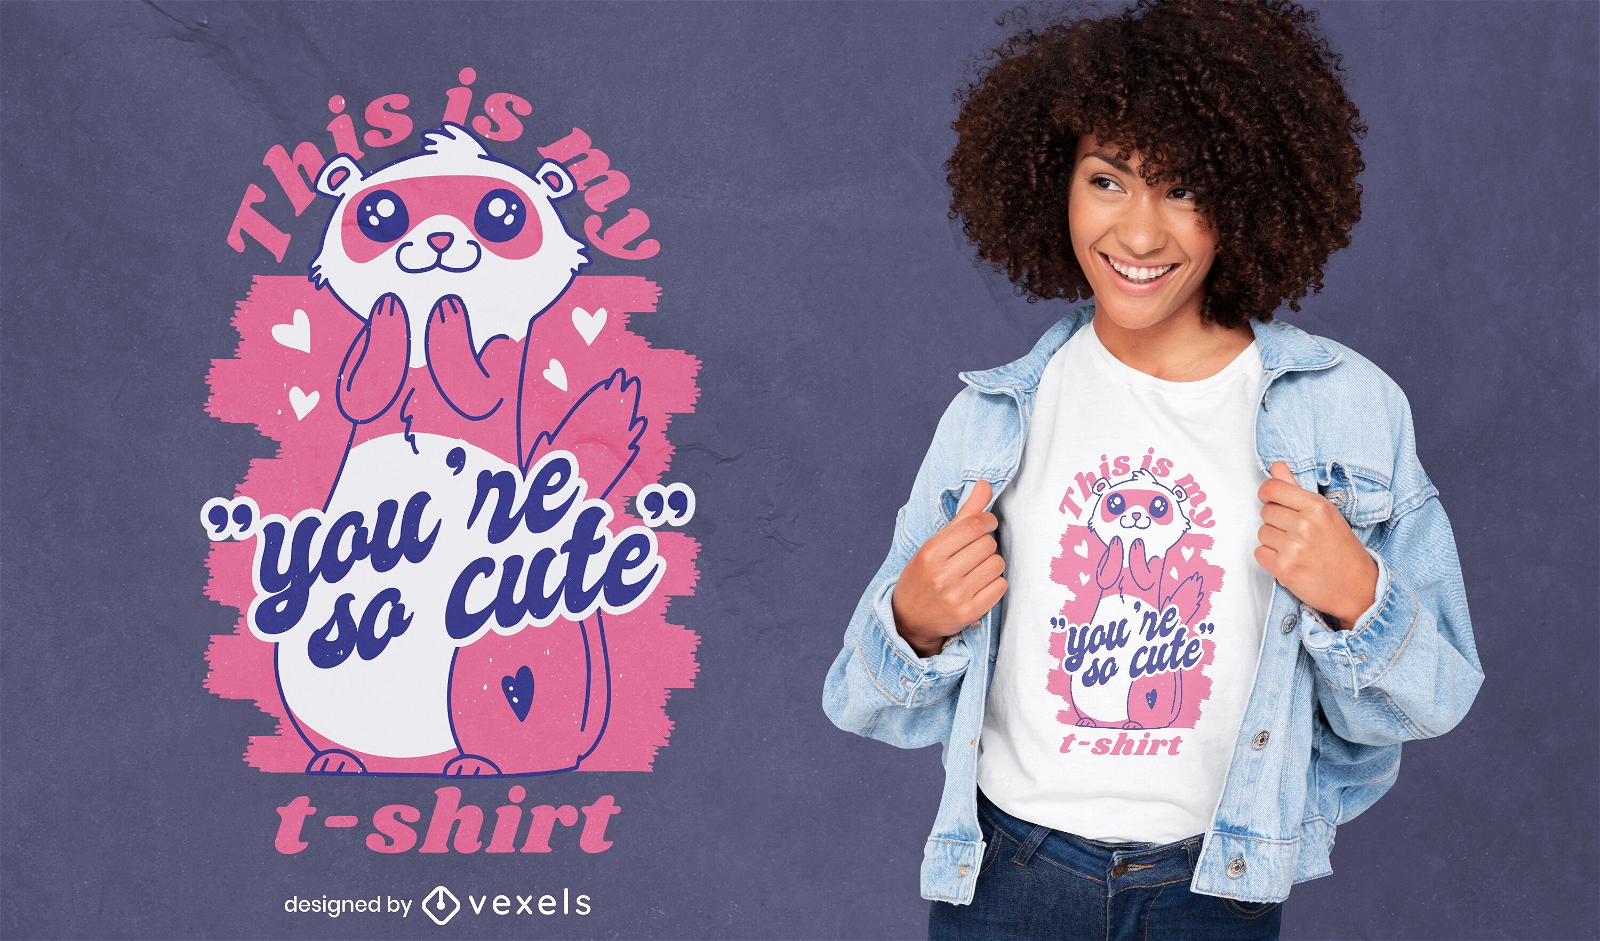 Ferret cute quote t-shirt design